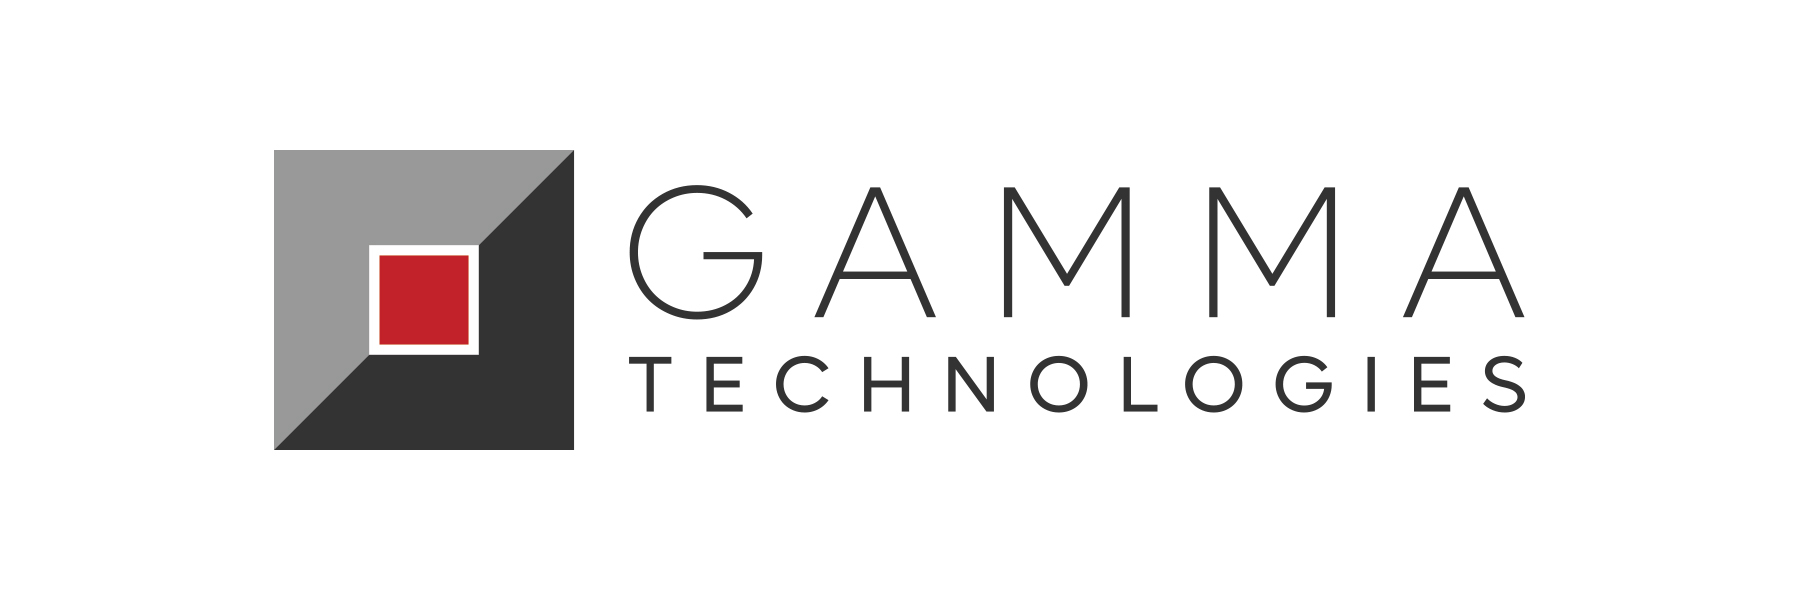 Gamma Technologies acquires ProFEMAG portfolio